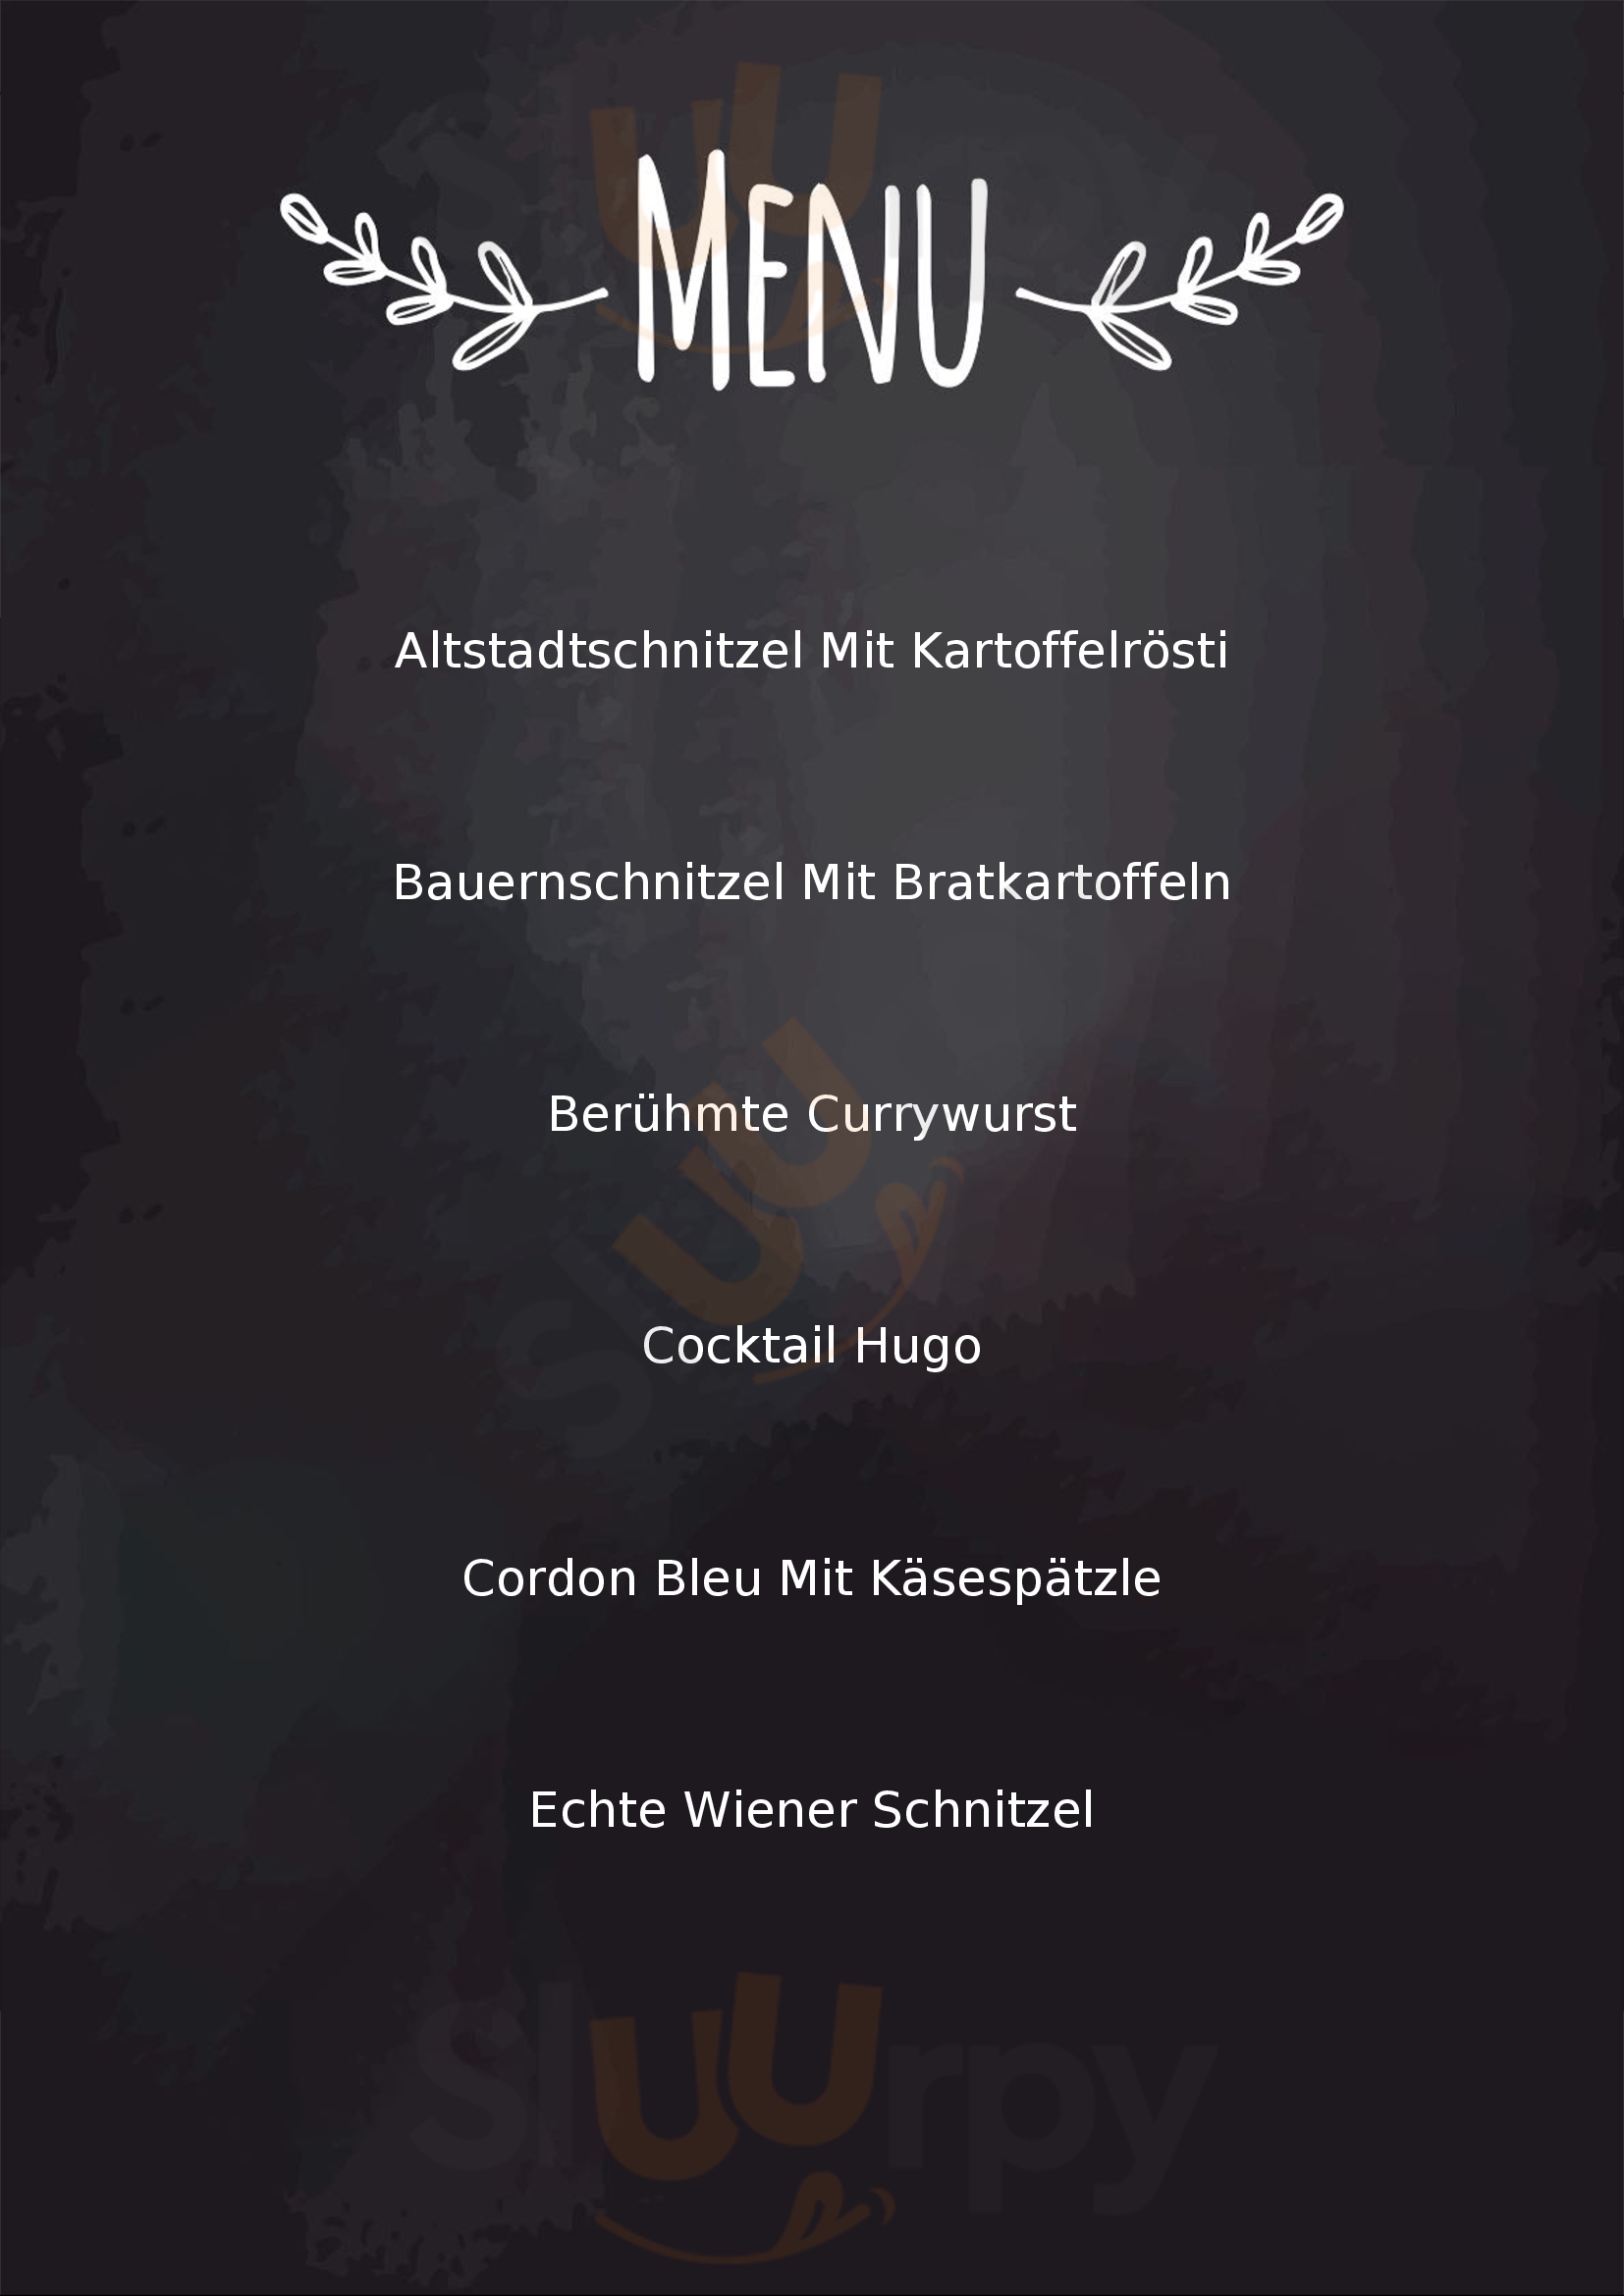 Boheme - Kaffeehaus & Restaurant Augsburg Menu - 1